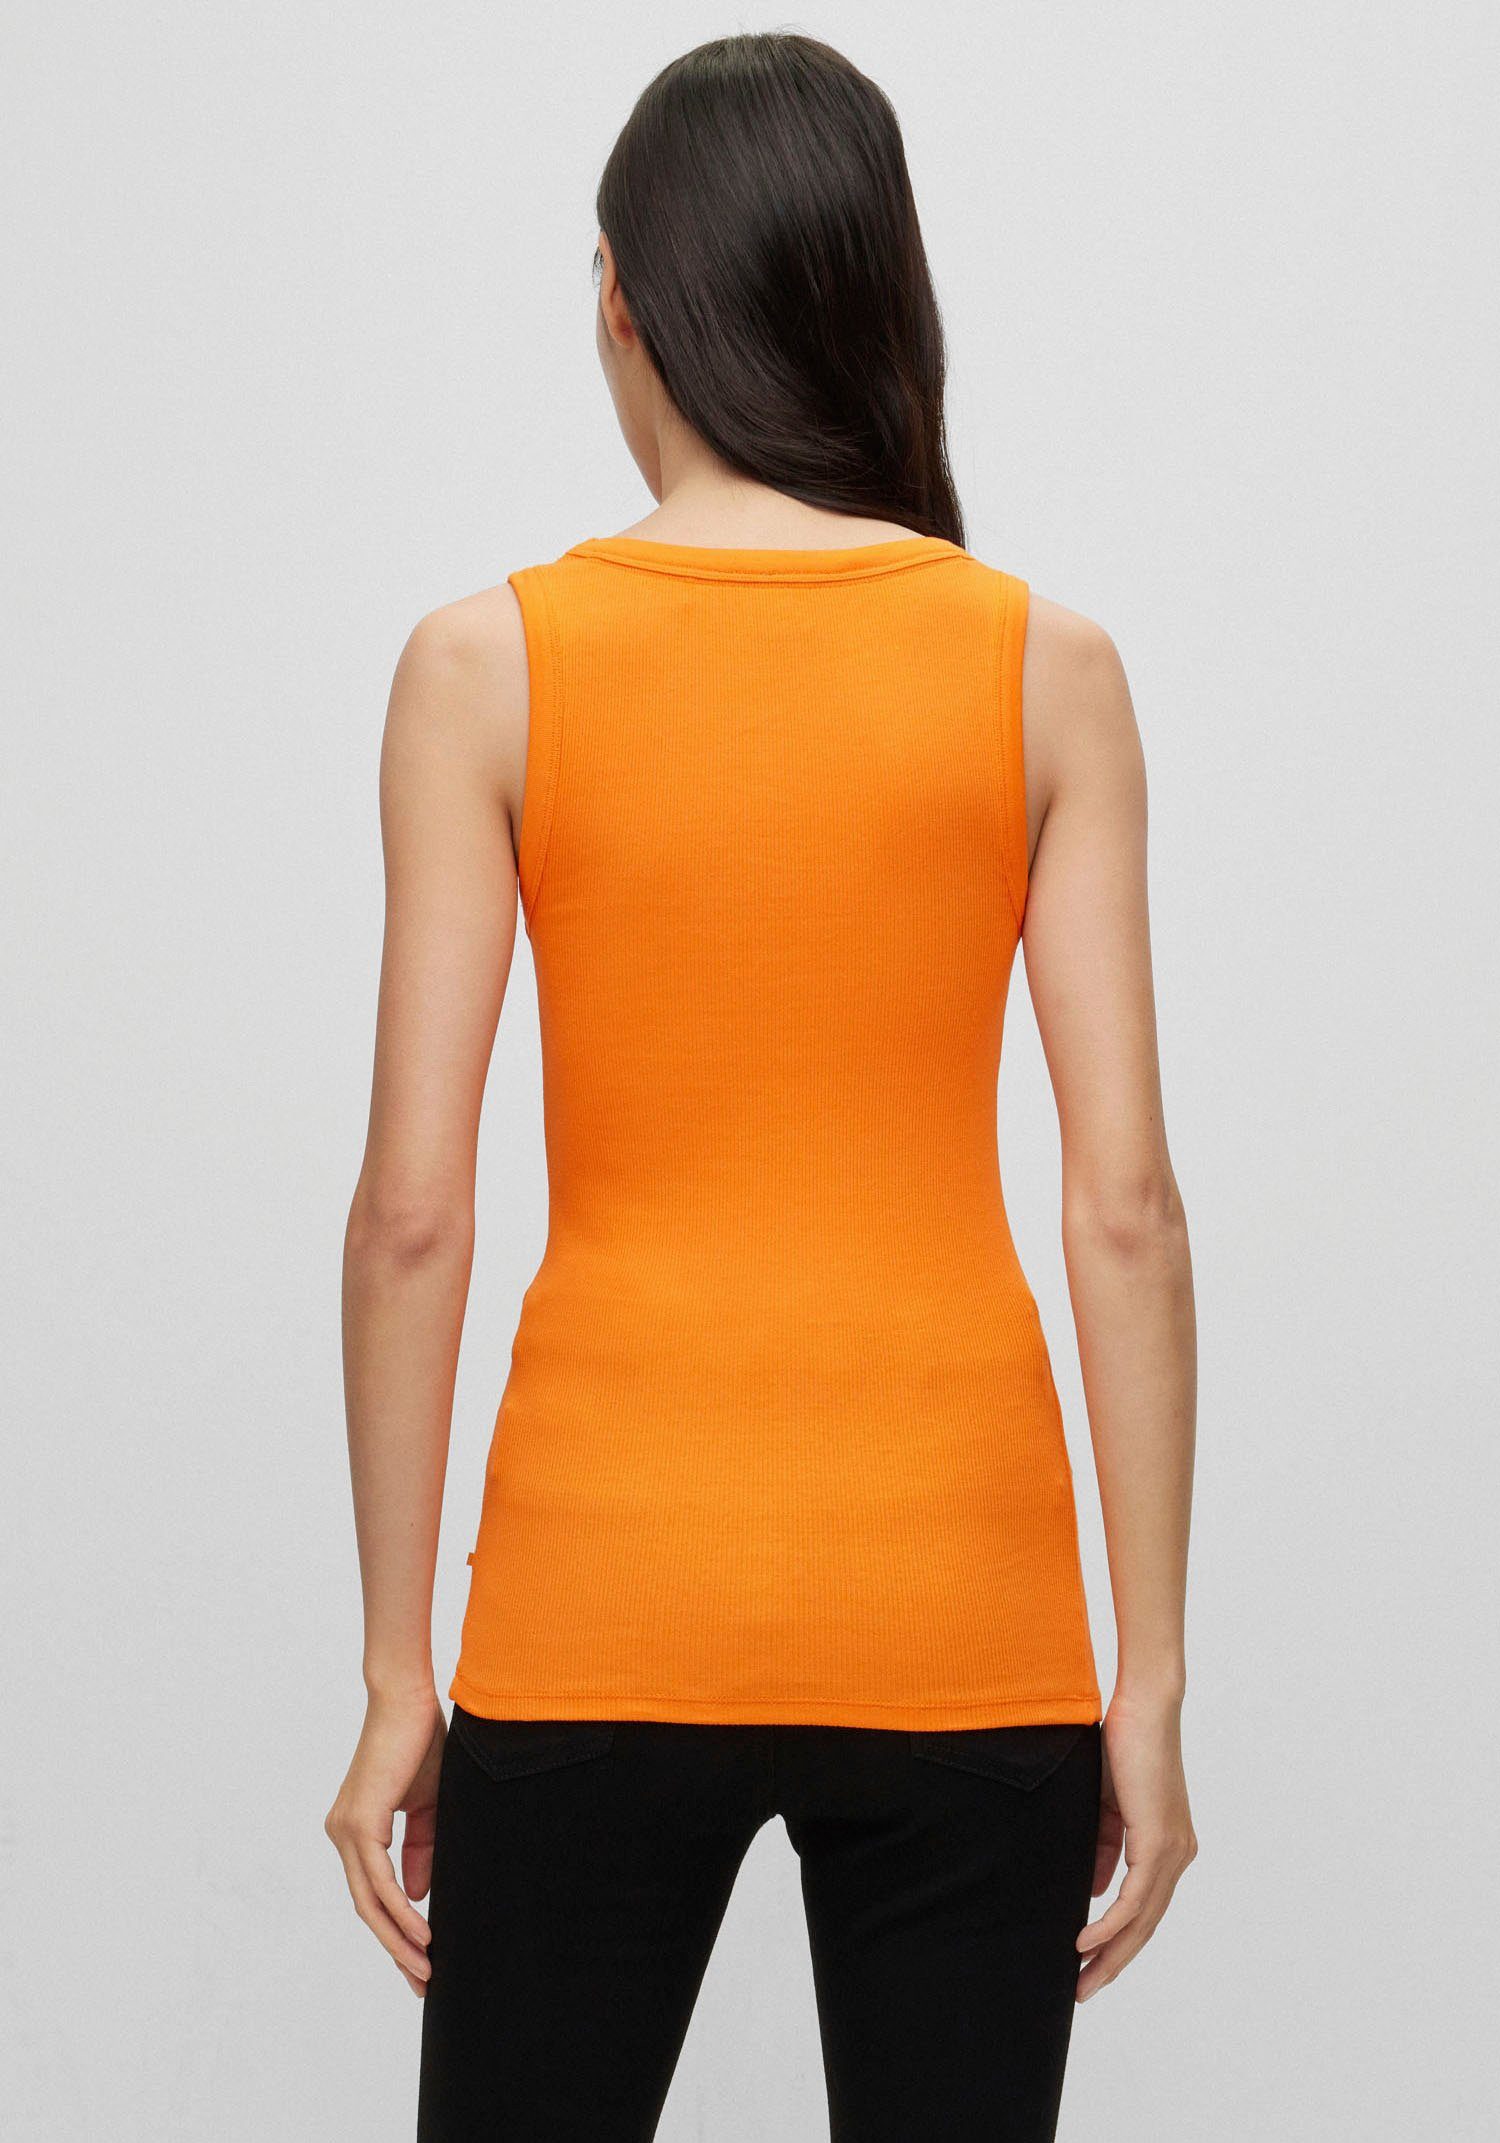 mit BOSS ORANGE Bright_Orange BOSS Muskelshirt Markenstreifen innen